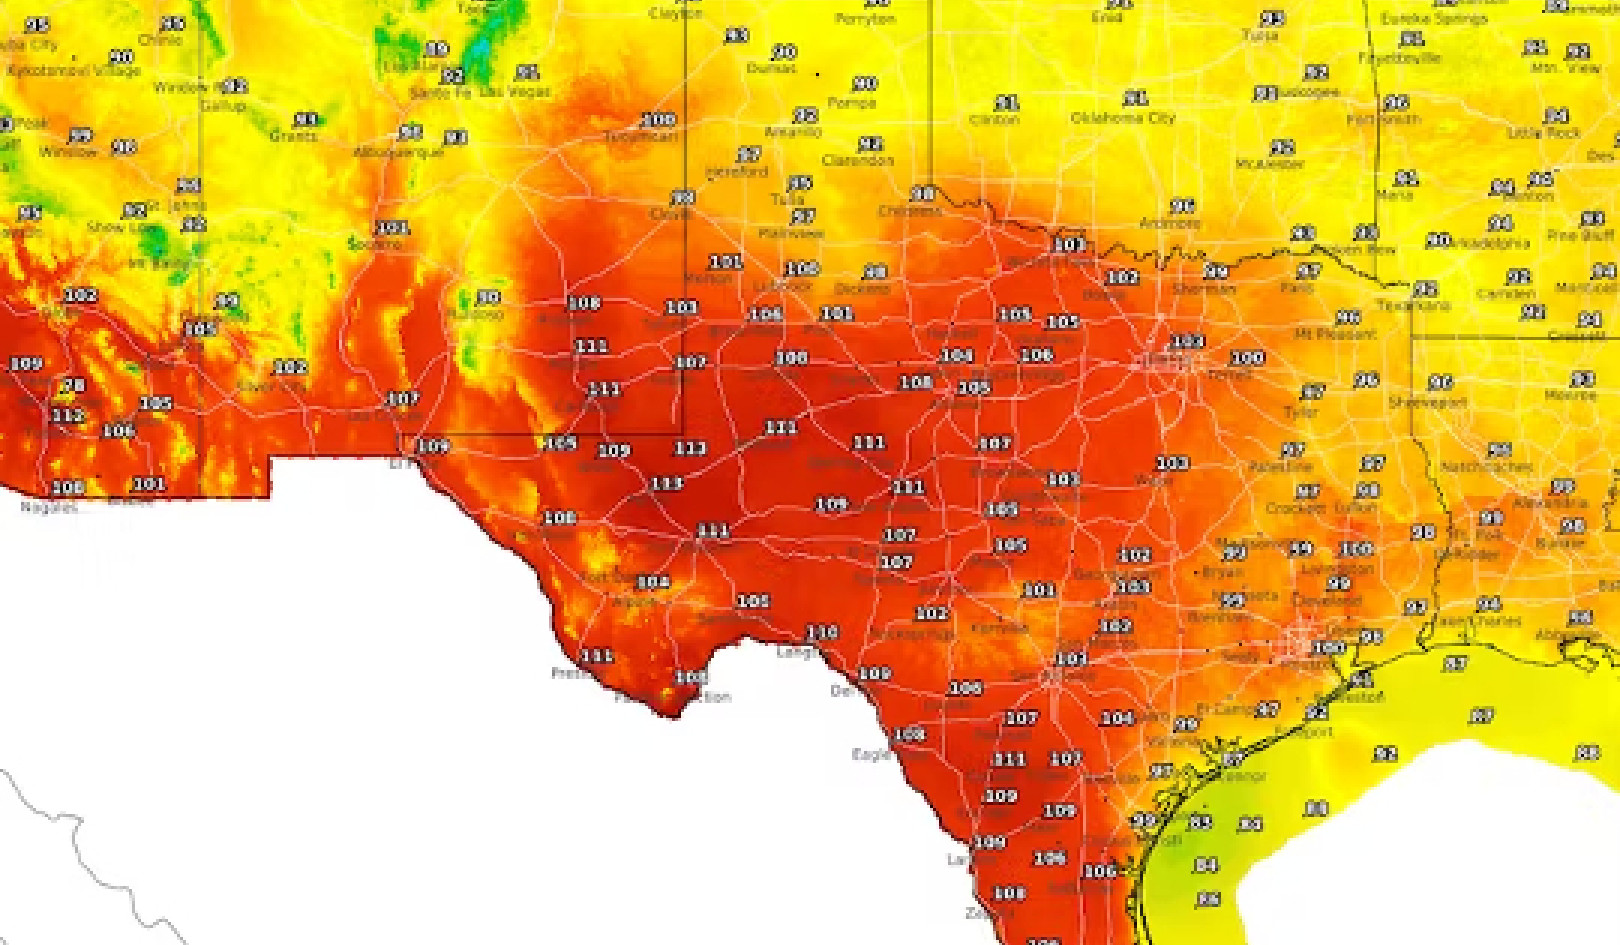 Memahami Kubah Haba: Dijelaskan Fenomena Cuaca Baking Texas